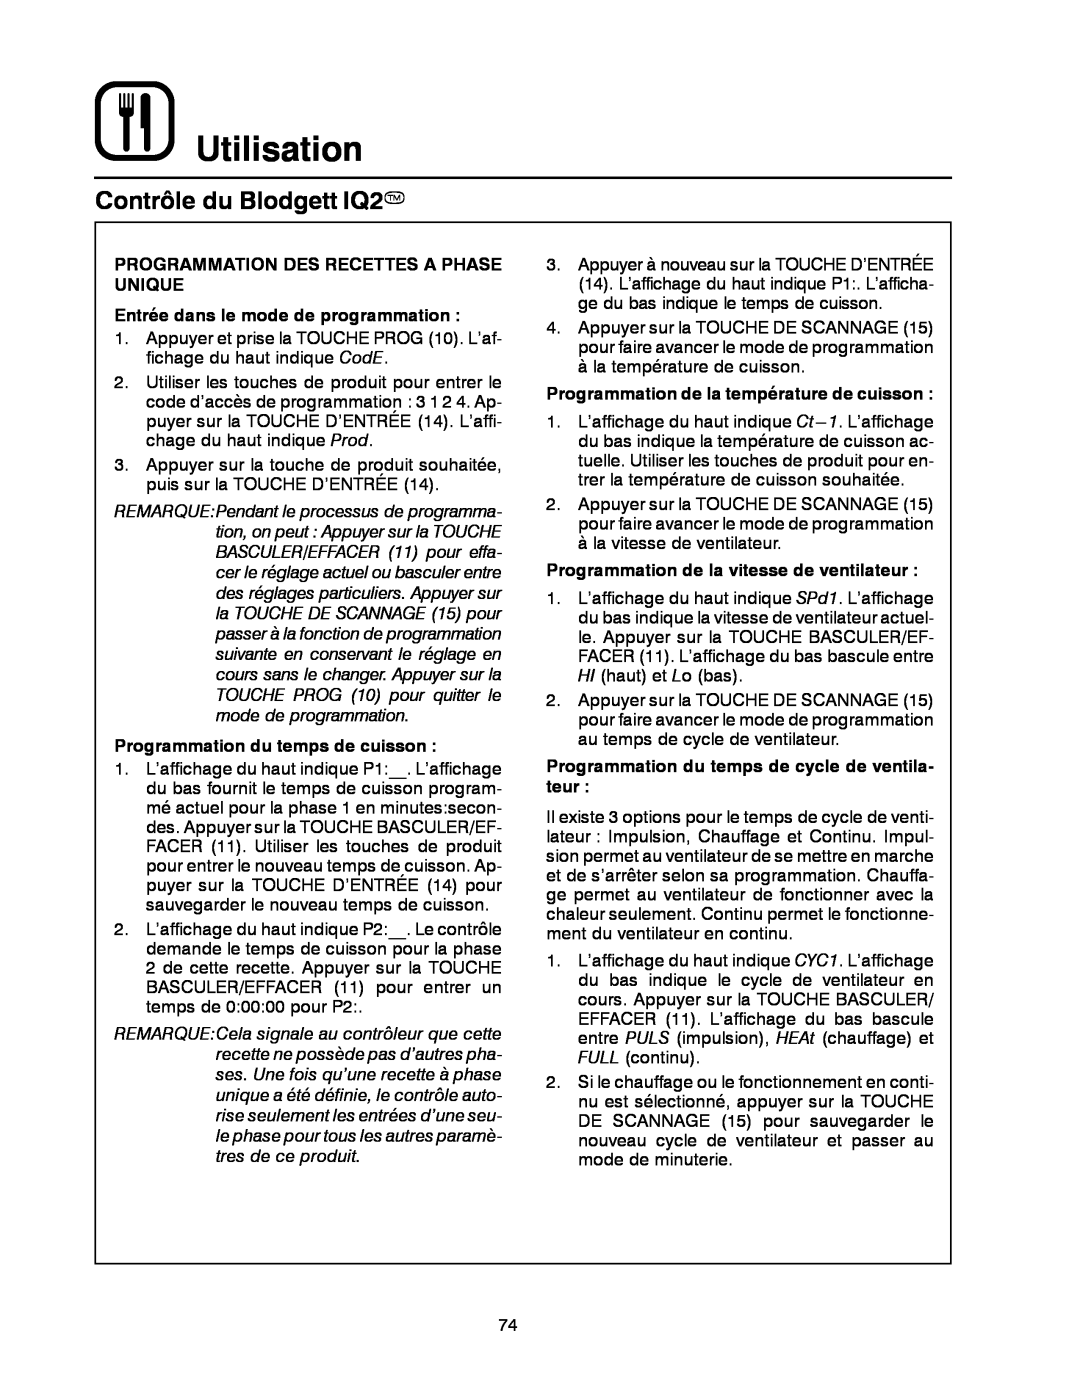 Blodgett DFG-200, DFG-100 manual Utilisation, Contrôle du Blodgett IQ2T, Programmation Des Recettes A Phase Unique 